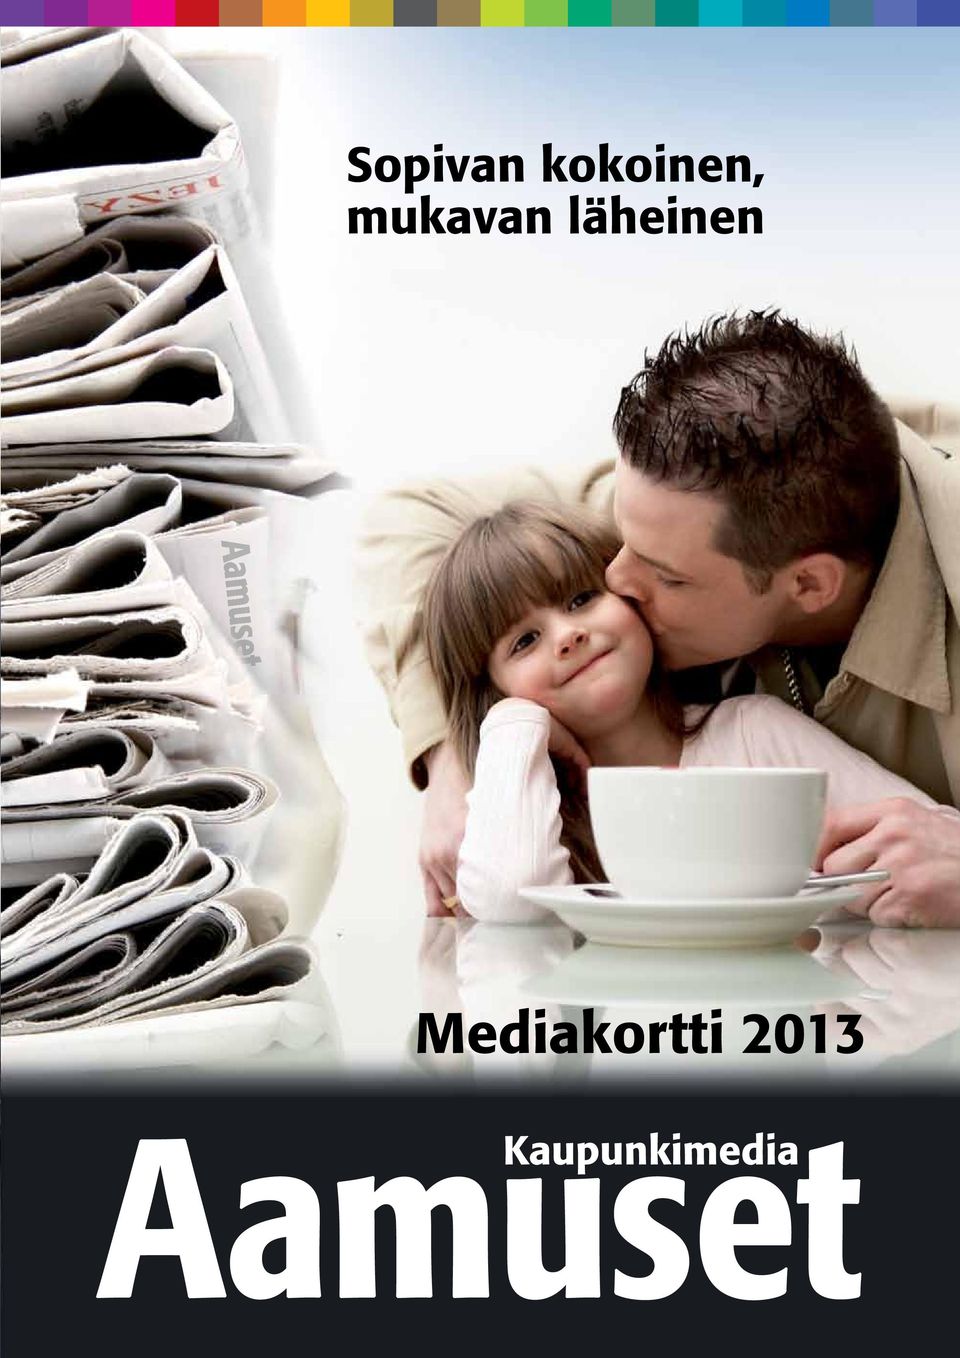 Mediakortti 2013